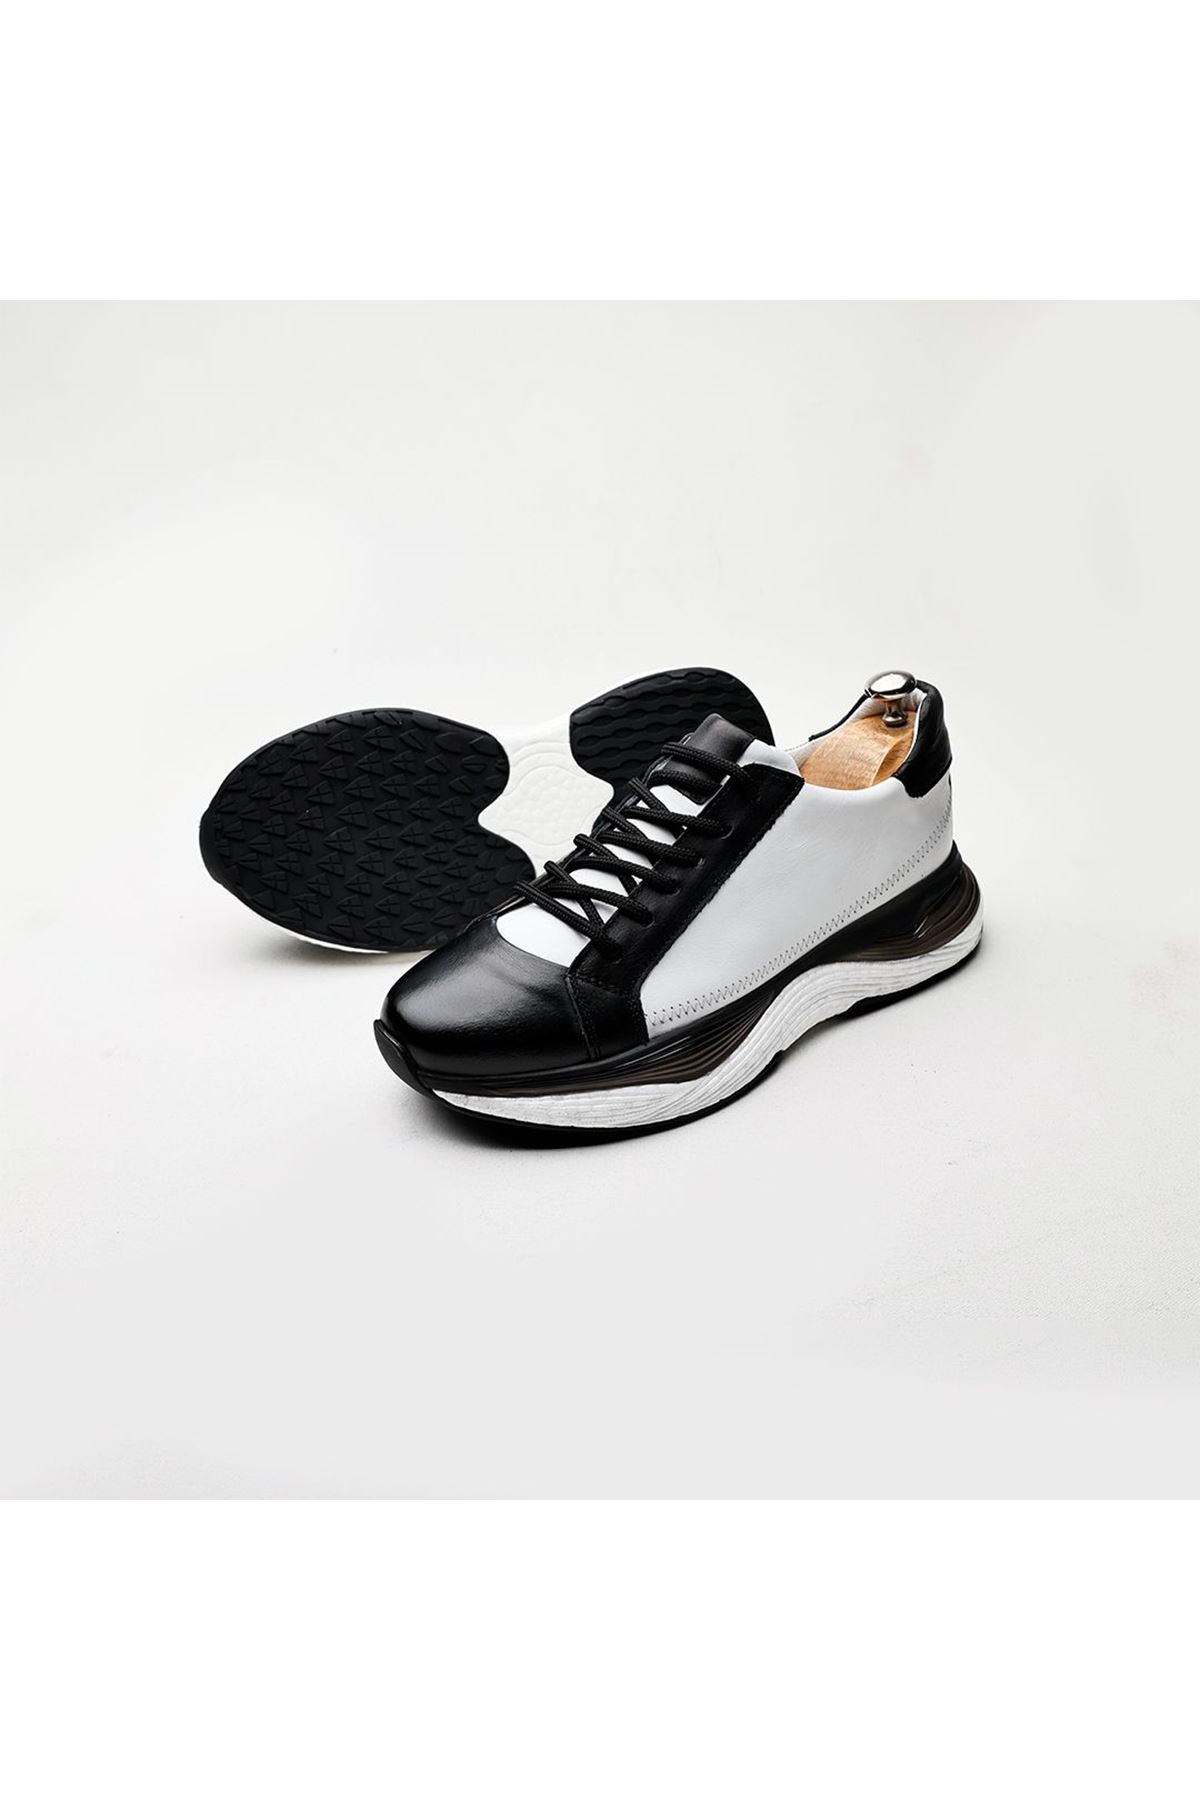 Boy Uzatan Gizli Topuklu Hakiki Deri Beyaz Siyah Matias Spor Ayakkabı MYY2041